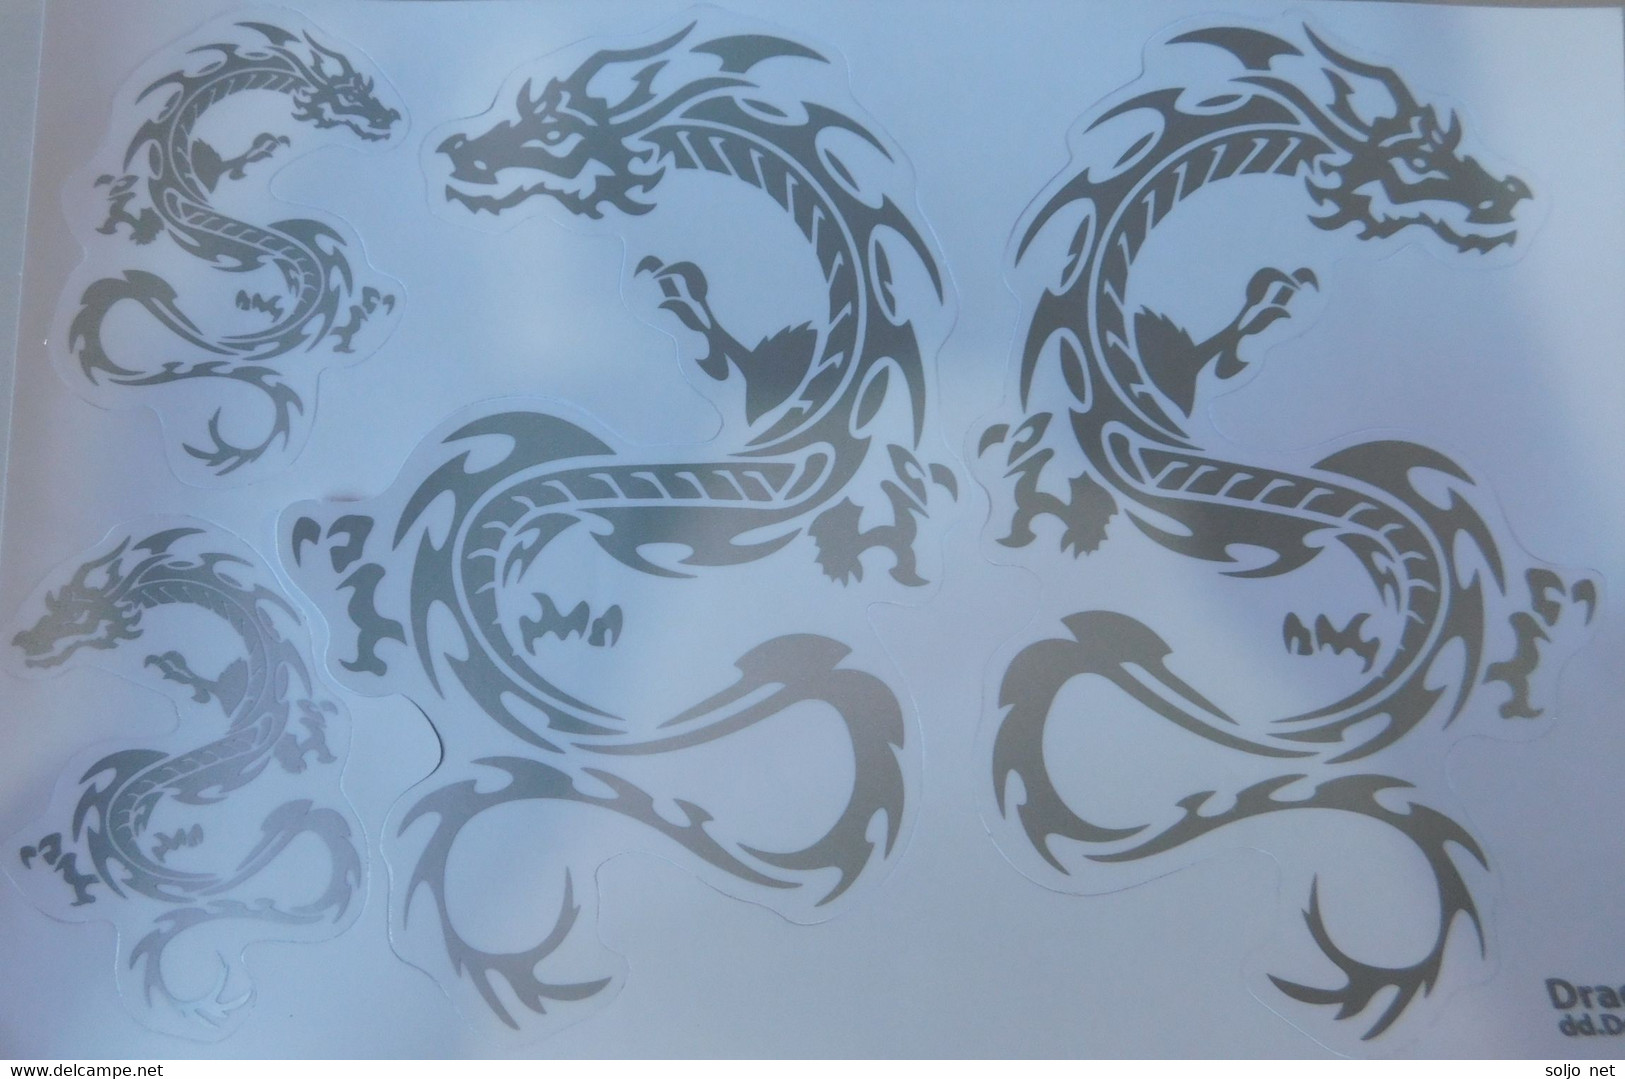 Drachen Grau Tiere Aufkleber / Dragon Grey Animal Sticker A4 1 Bogen 27 X 18 Cm ST196 - Scrapbooking